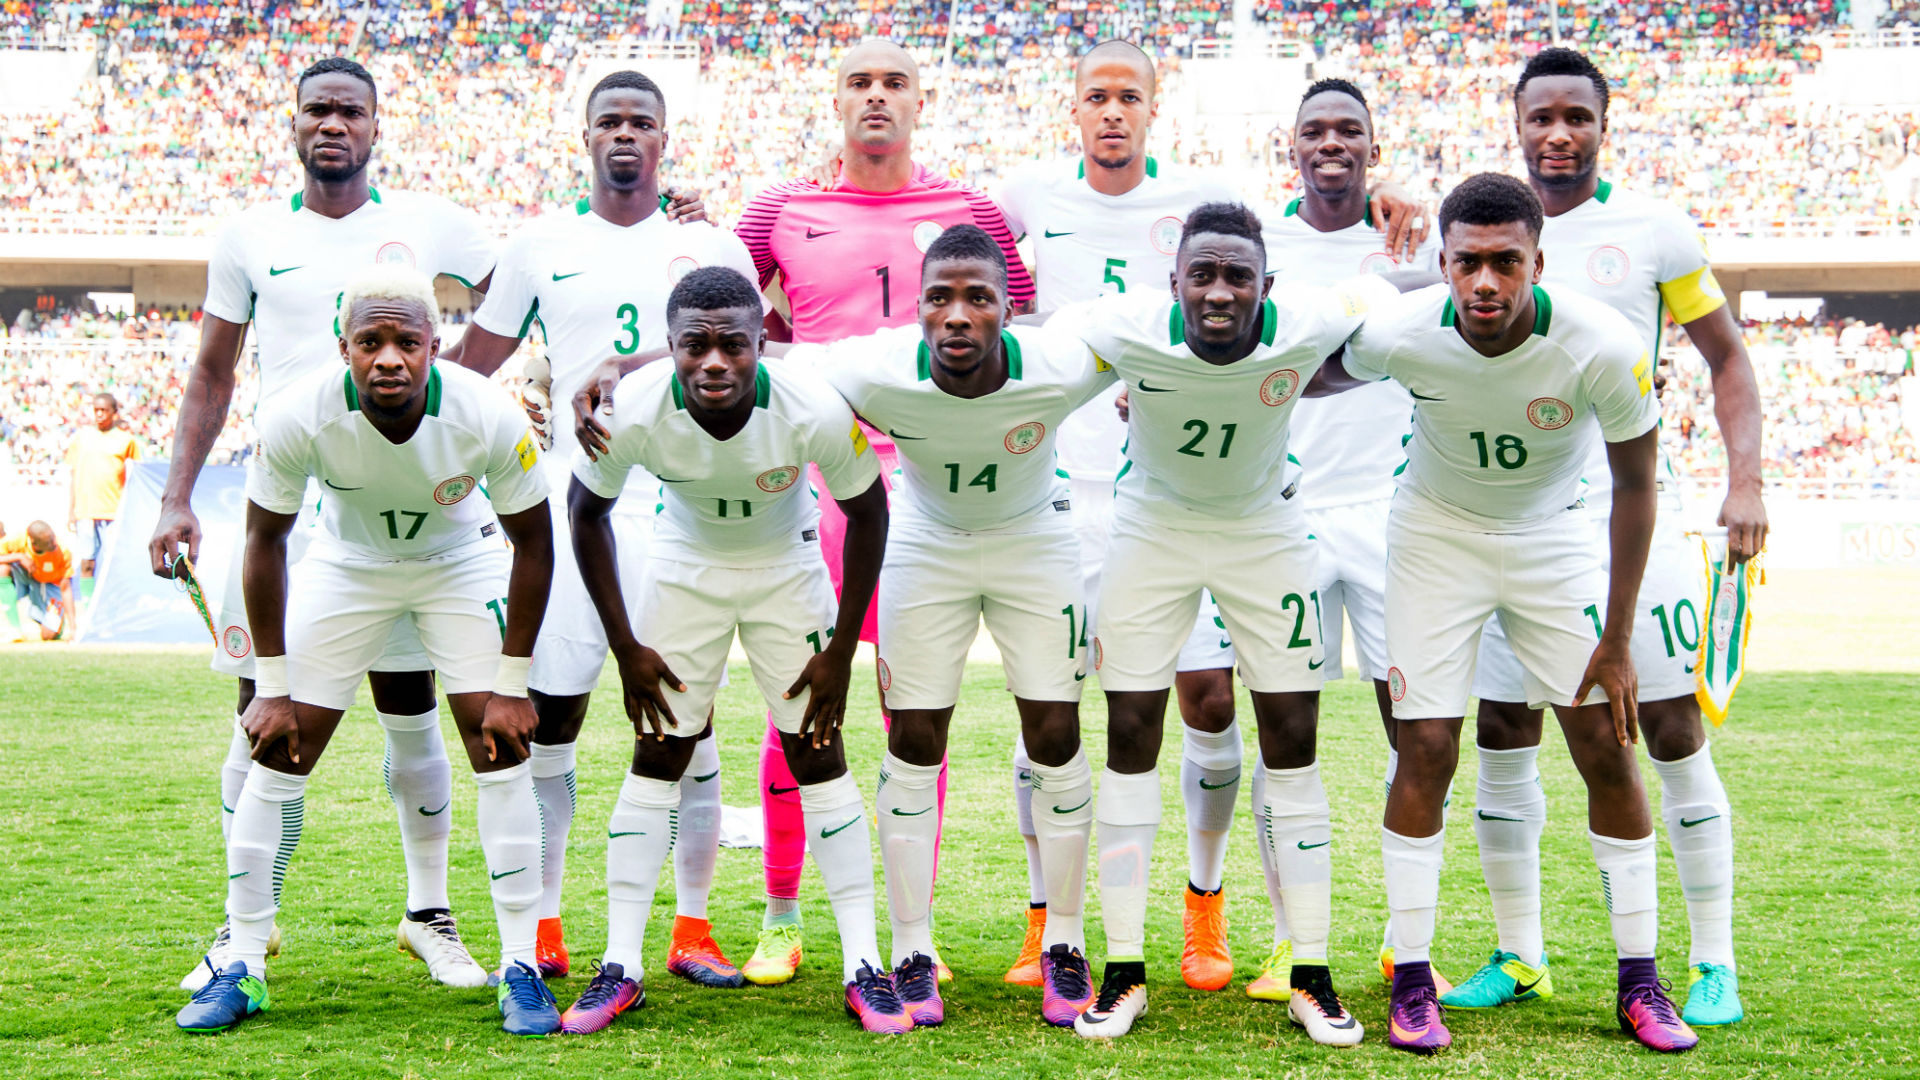 Nigeria national team - Goal.com1920 x 1080